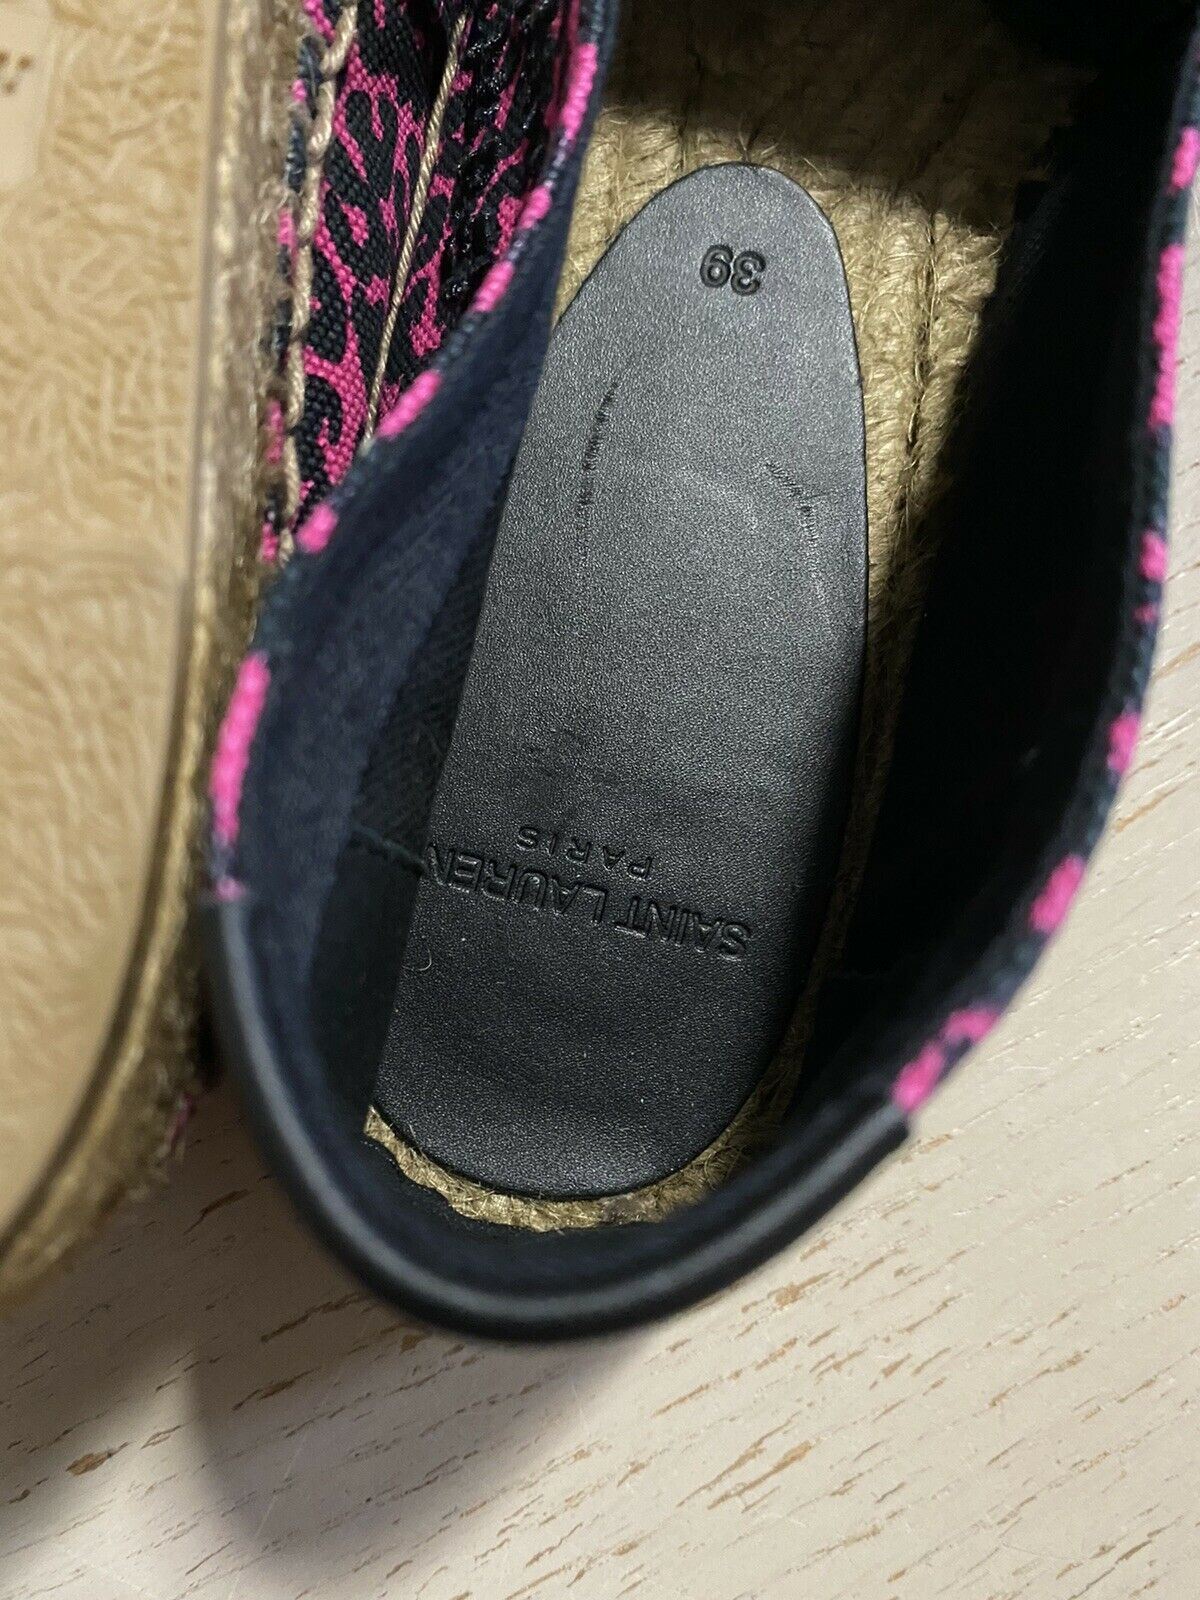 NIB Saint Laurent Flache Espadrille-Schuhe mit Leopardenmuster für Damen, Rot/Schwarz, 9 US/39 Eu